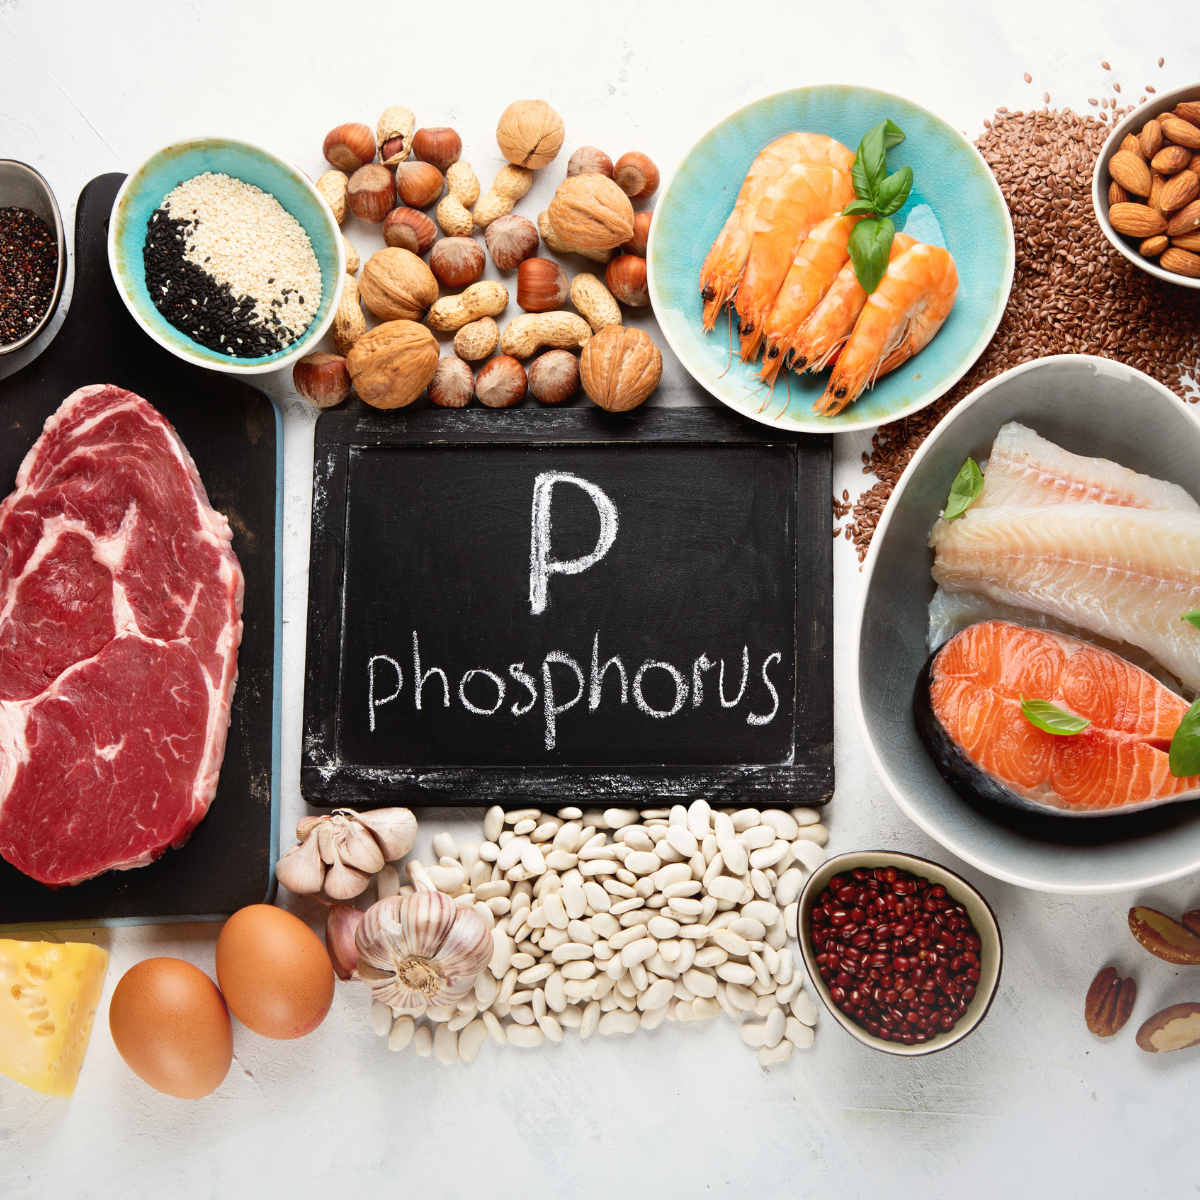 Fosfor - za co odpowiada i jaka jest jego rola?